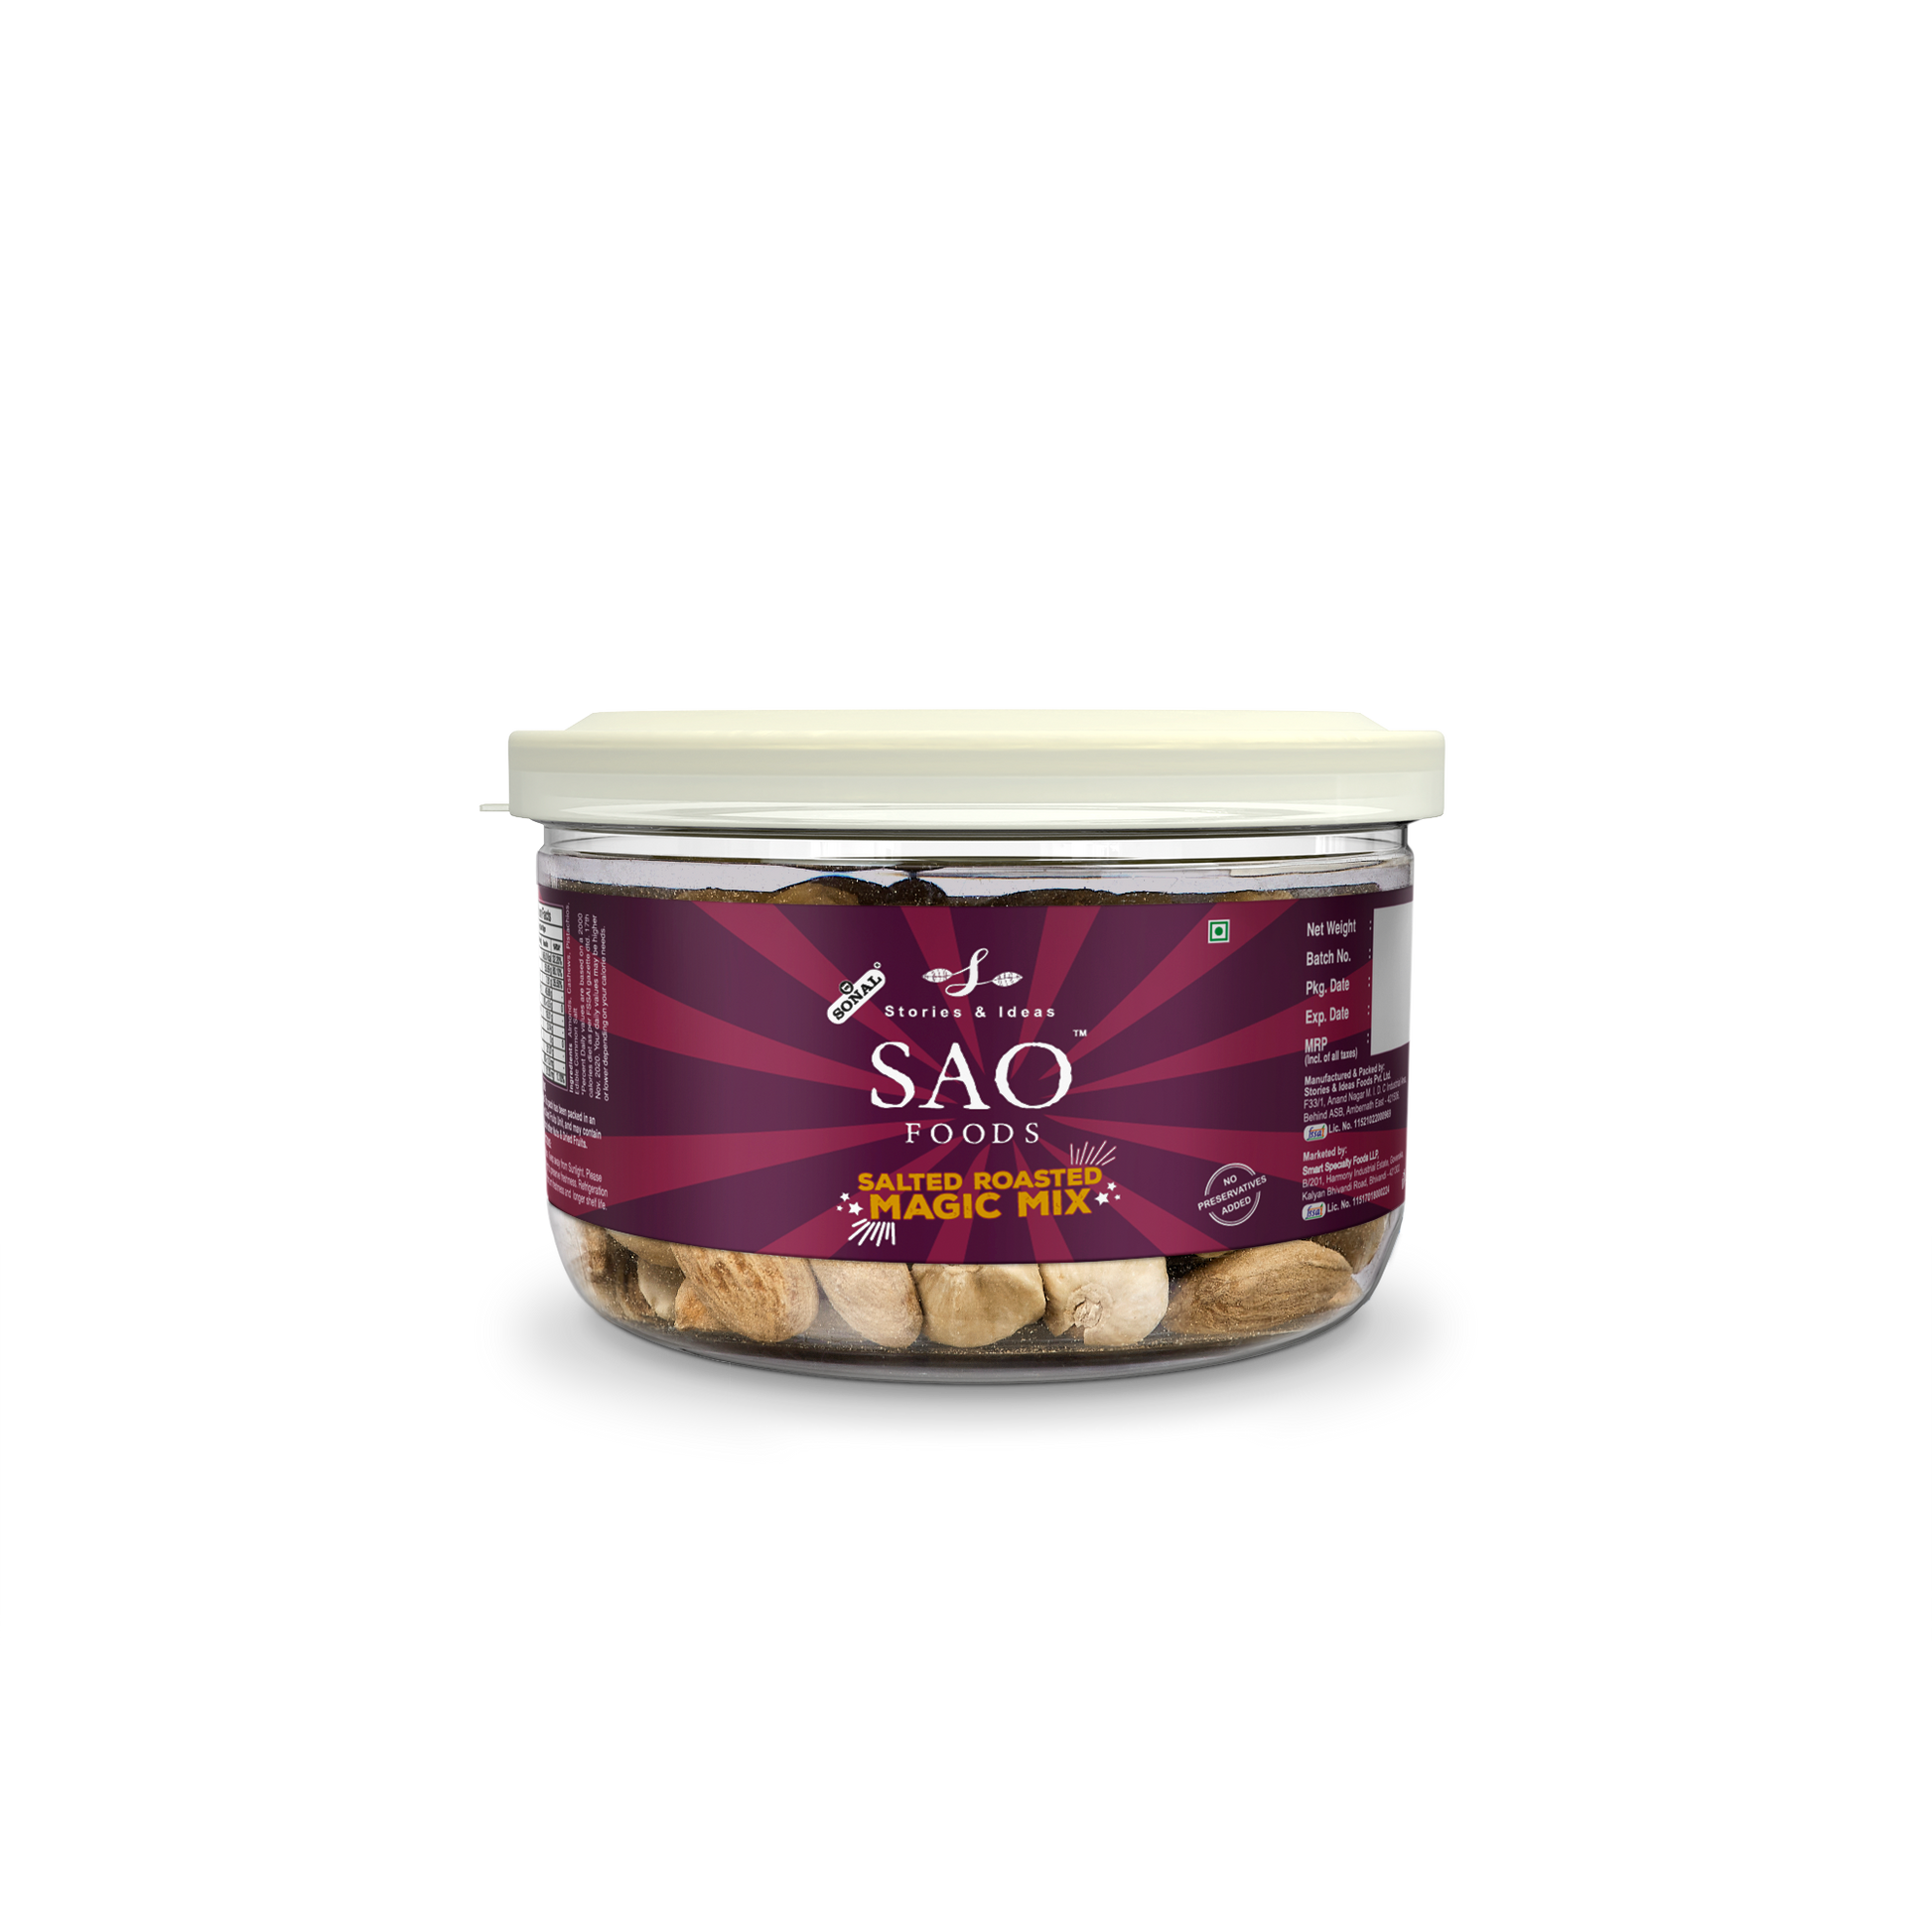 SAO Foods Salted Roasted Magic Mix 100 gm | Tin Cap PET Jar